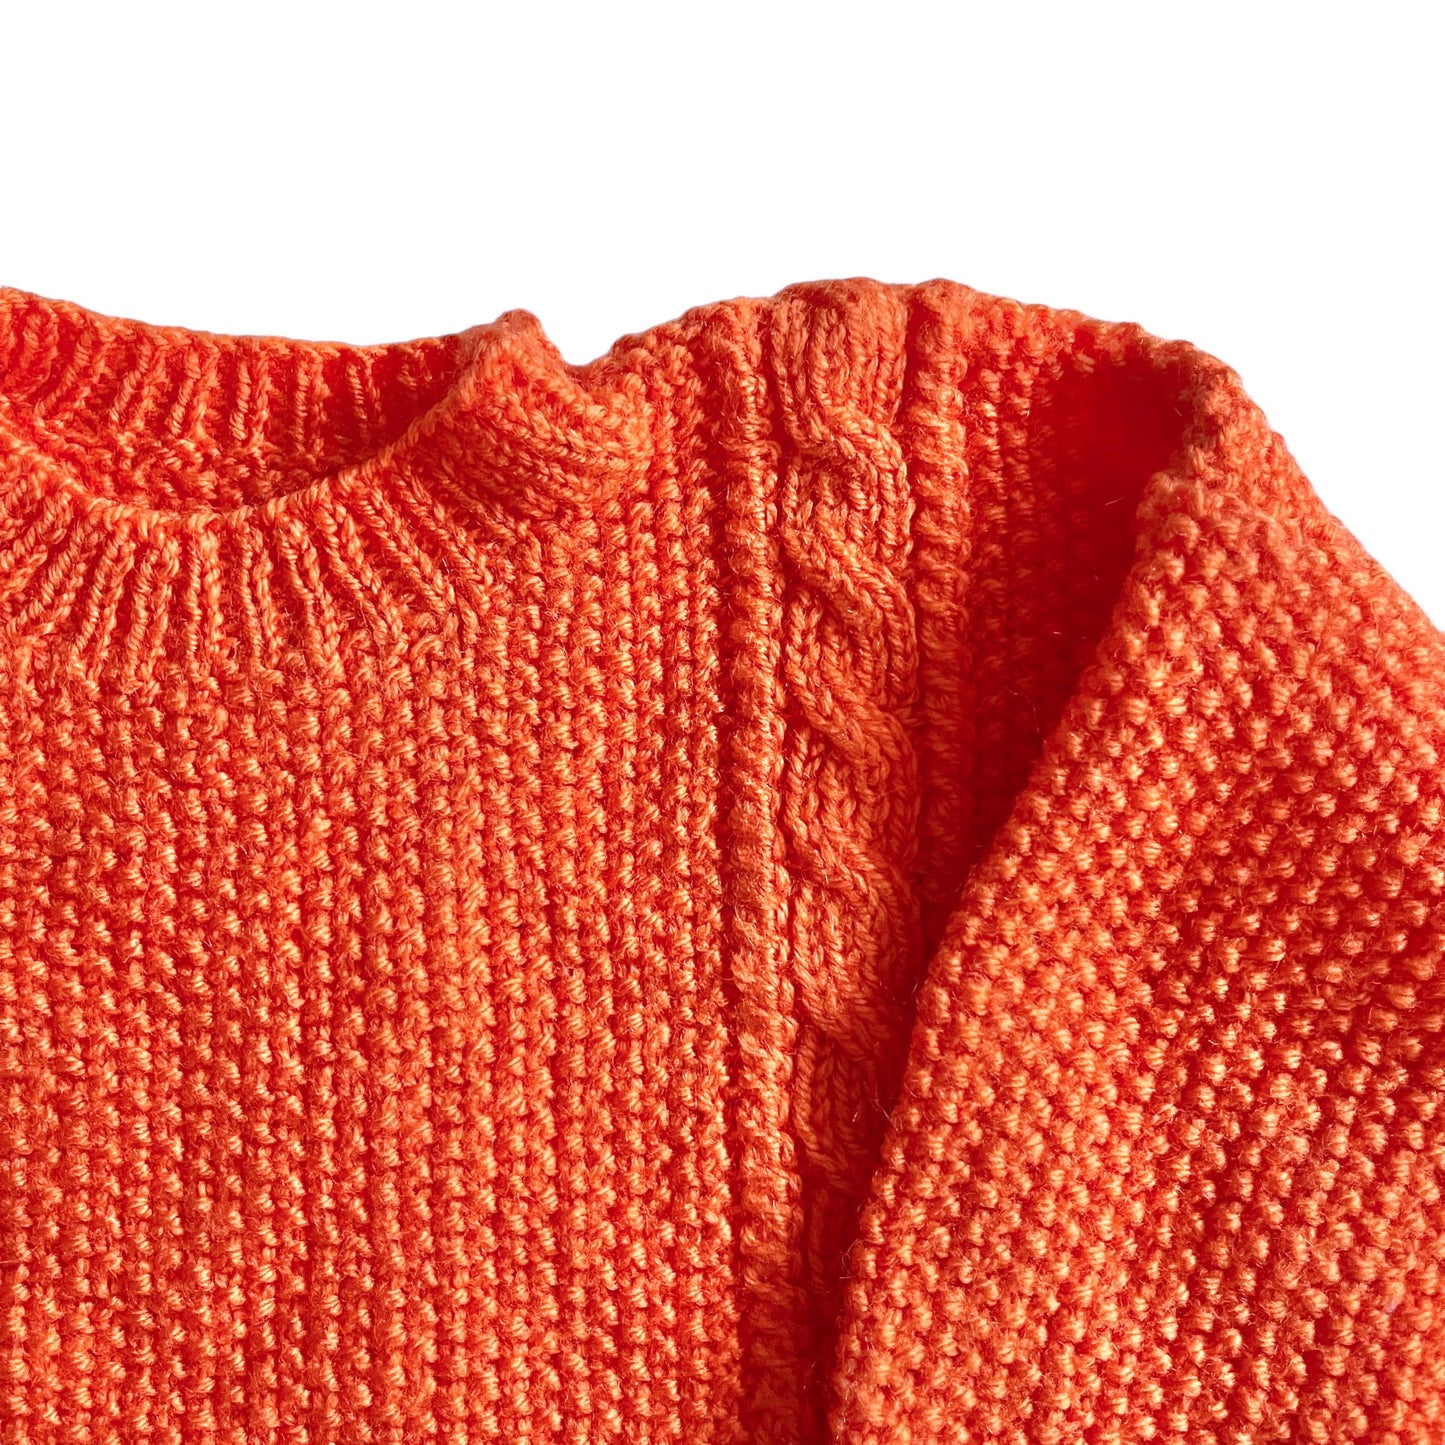 Vintage Knitted Orange Cable Knit Jumper / 18-24M